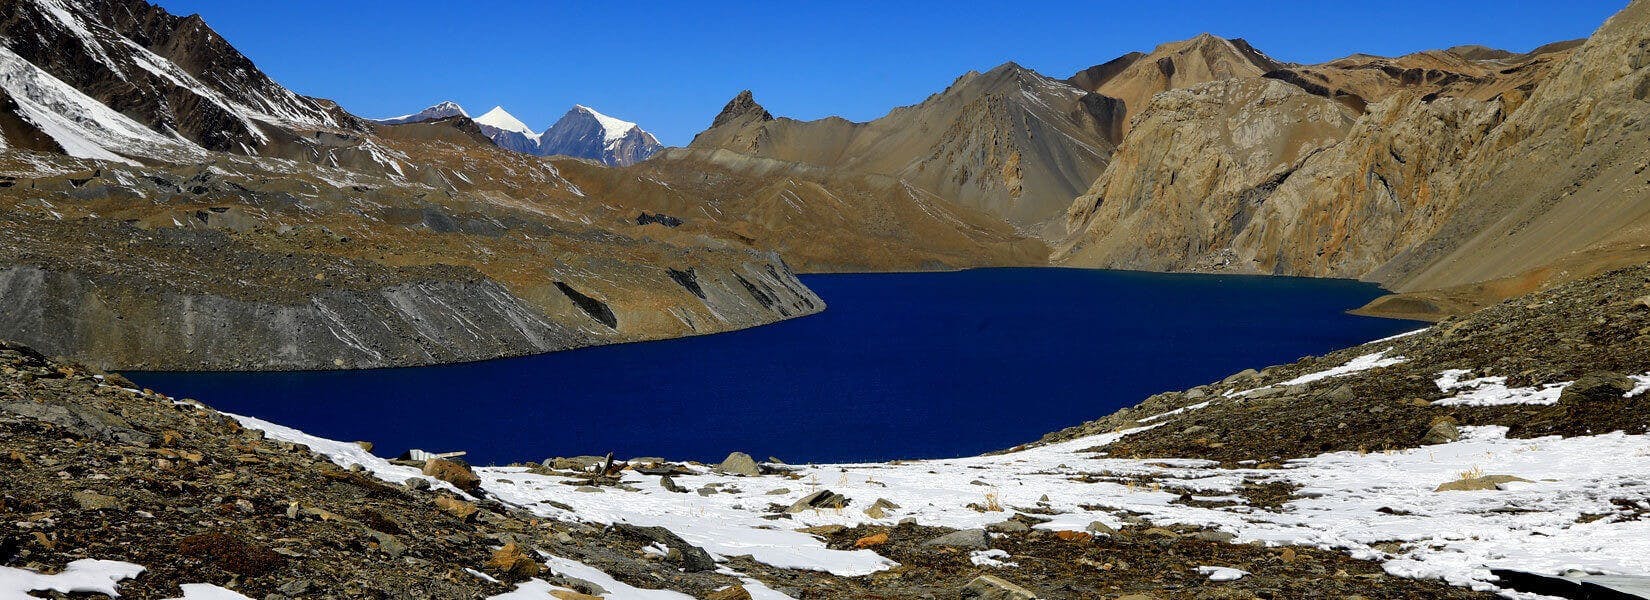 High Pass Trekking in Nepal